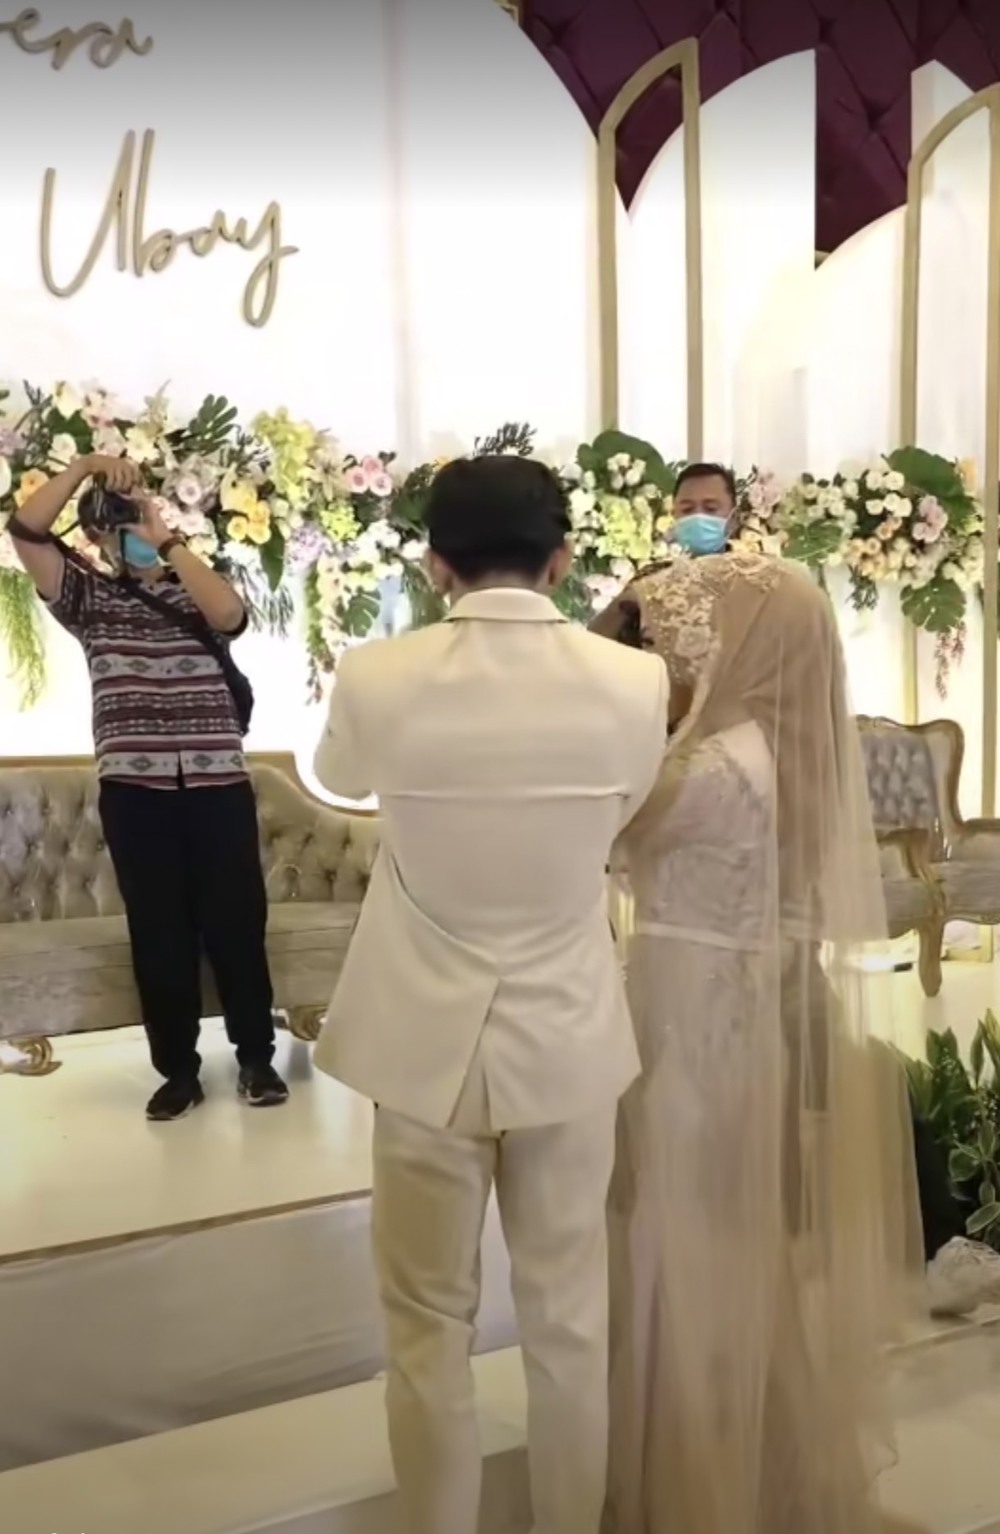  
Cặp đôi cô dâu - chú rể cùng tung hoa cưới. (Ảnh cắt từ clip)